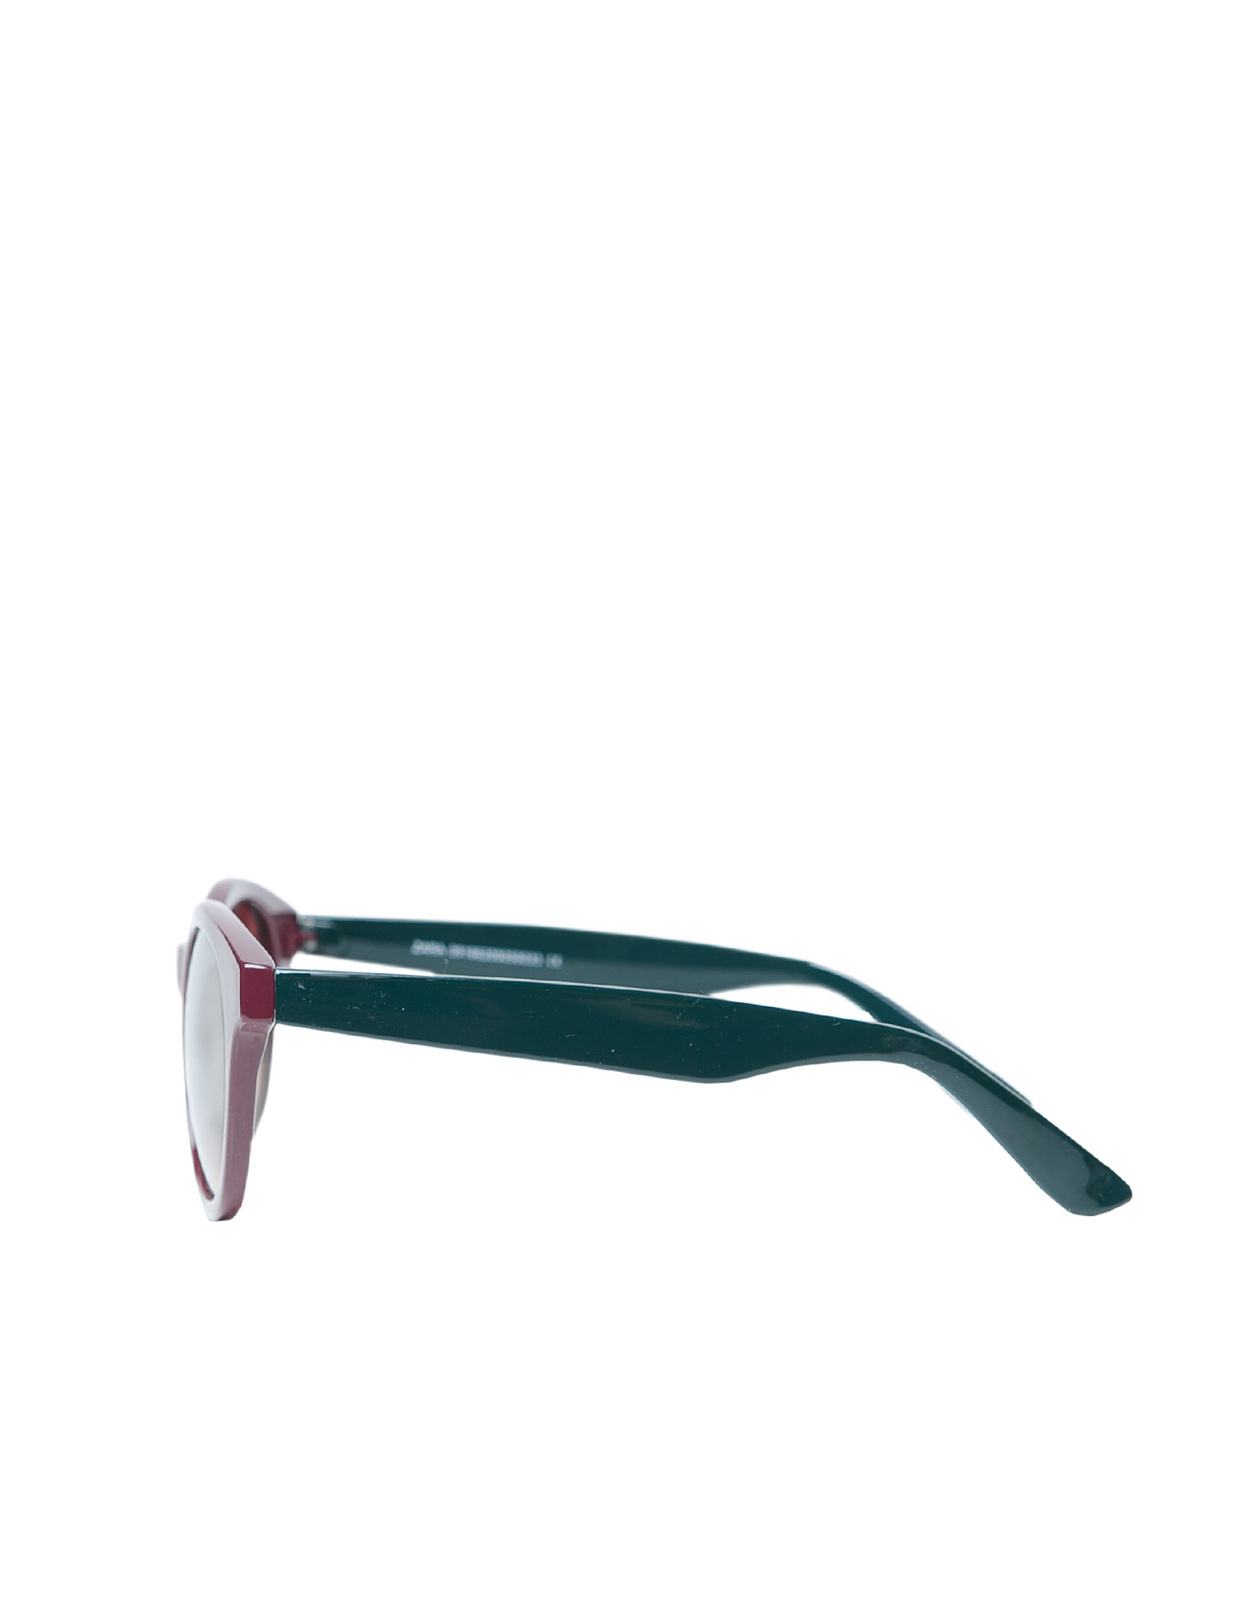 Zara kétszínes napszemüveg 2012 fotója